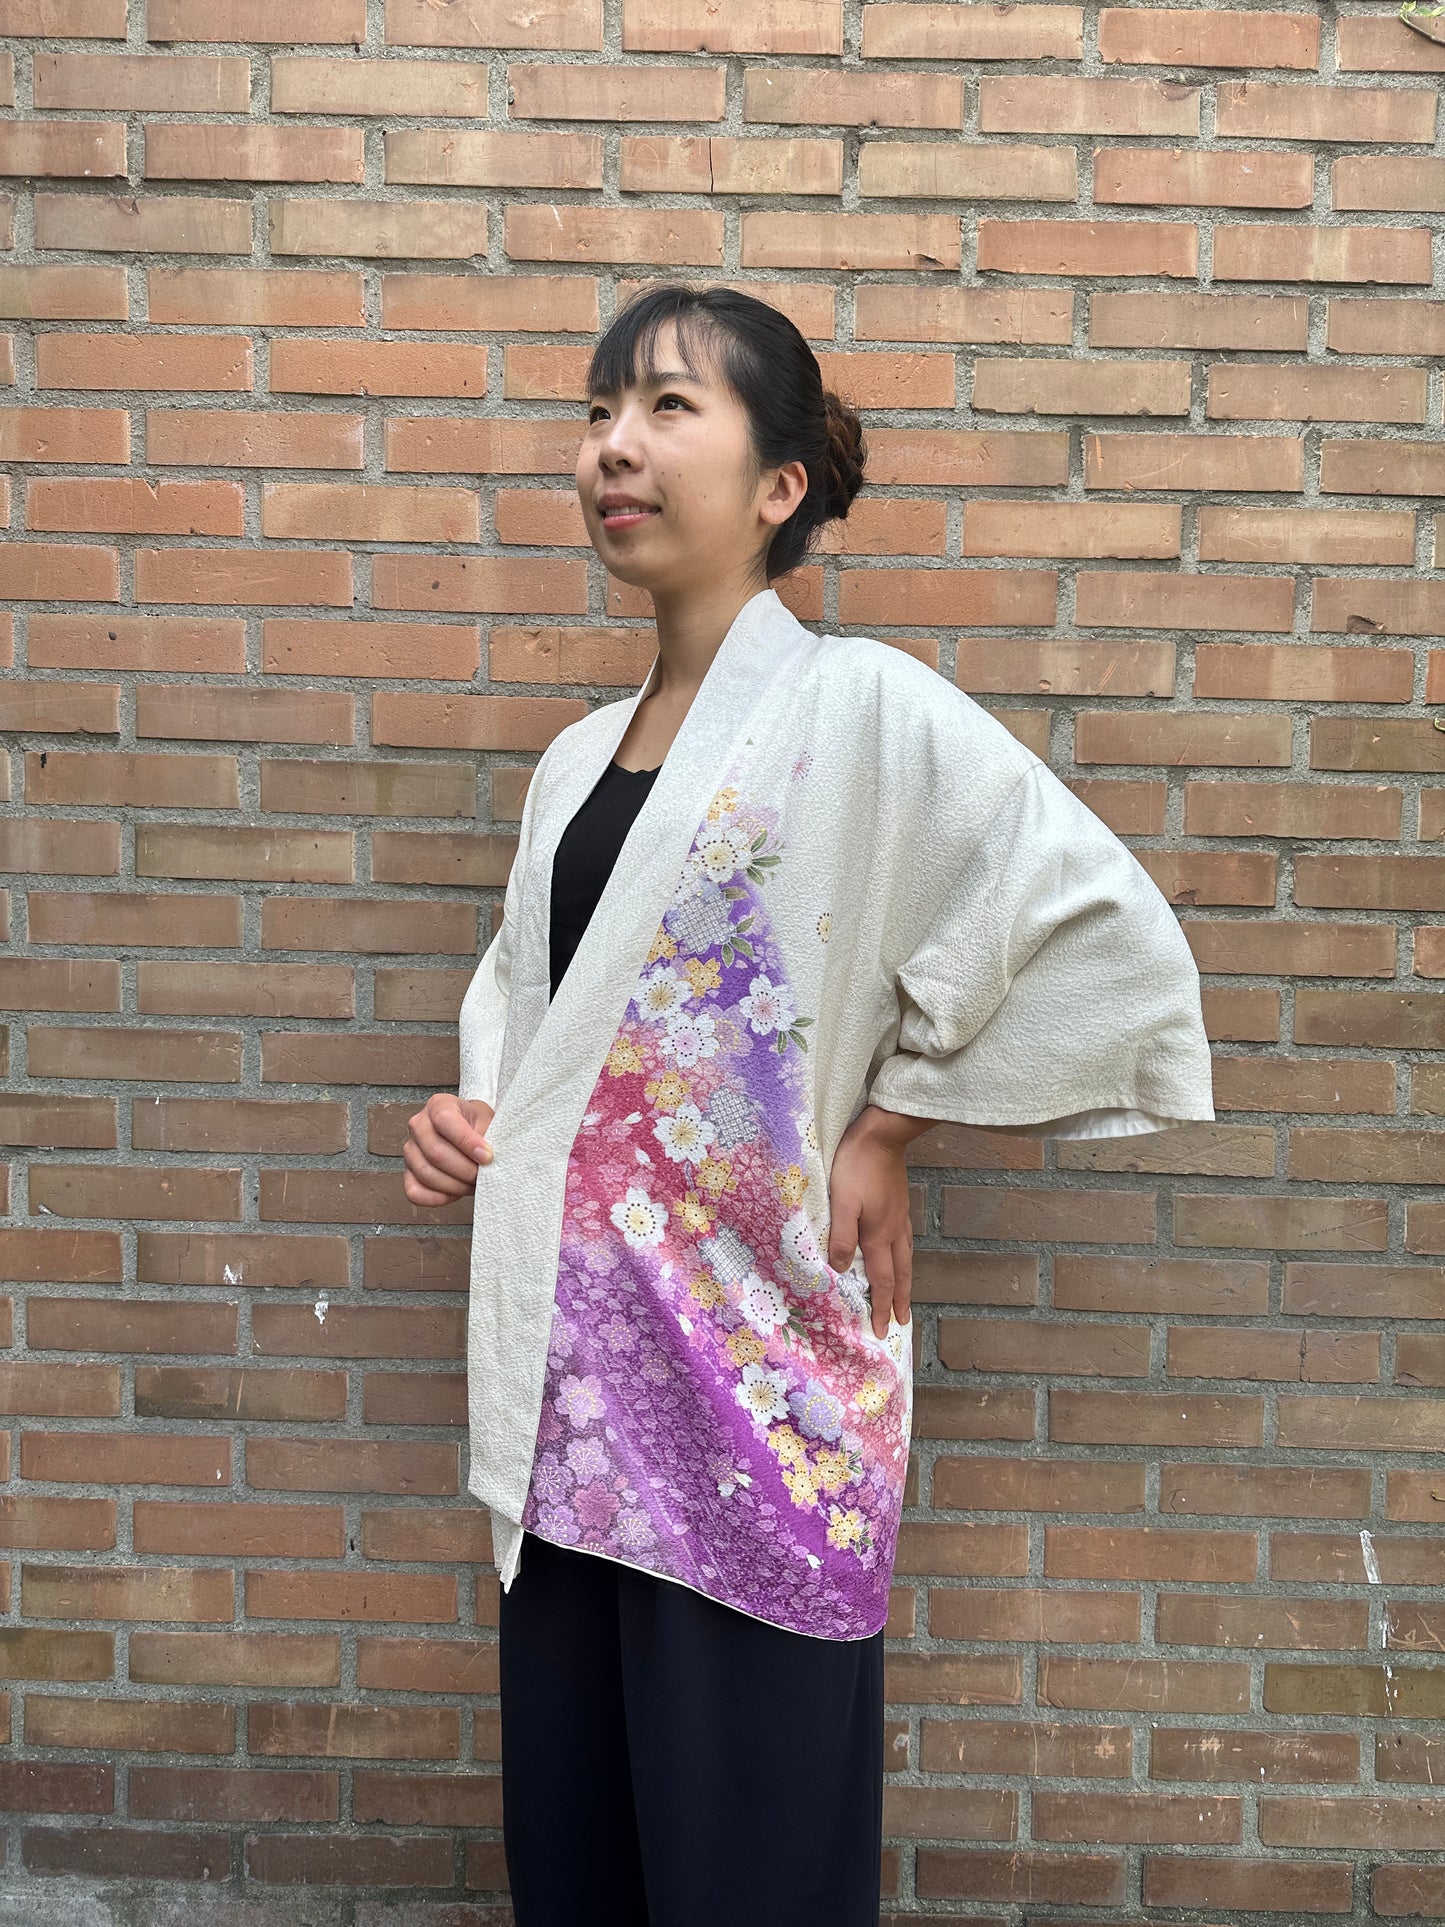 【Wit, kersenbloesem】 Happi jas ＜ Uitstekend ・ zijde ＞ voor mannen, voor vrouwen, Japanse kimono, Japan unisexese kleding, unisex, Japanse geschenken, originele ontwerpen